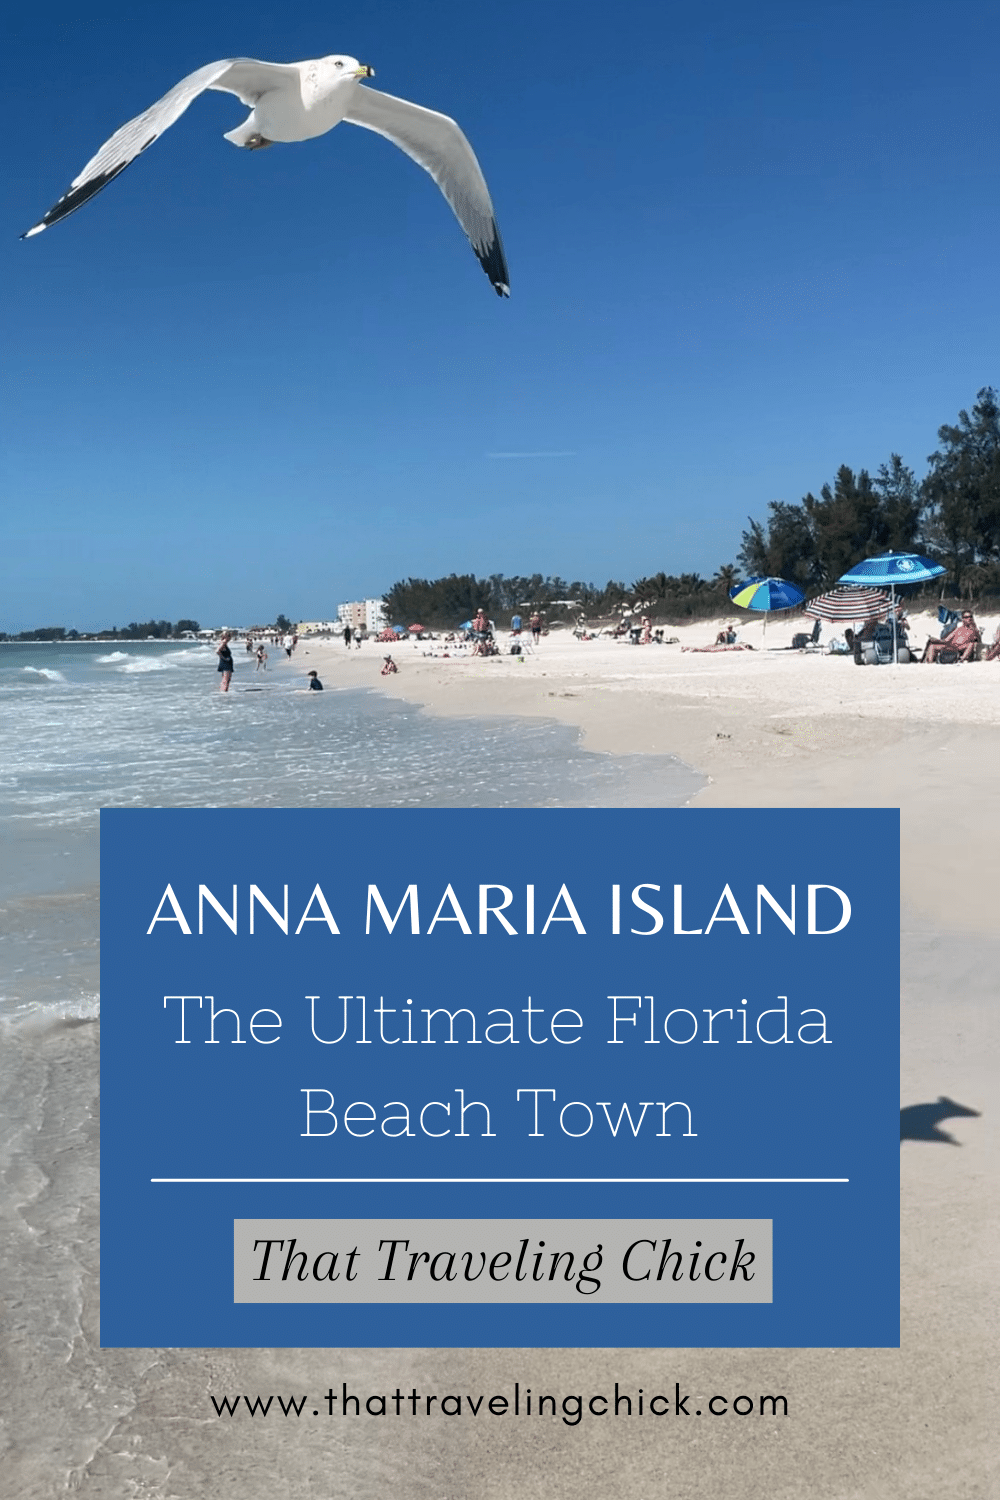 Anna Maria Island: The Ultimate Florida Beach Town